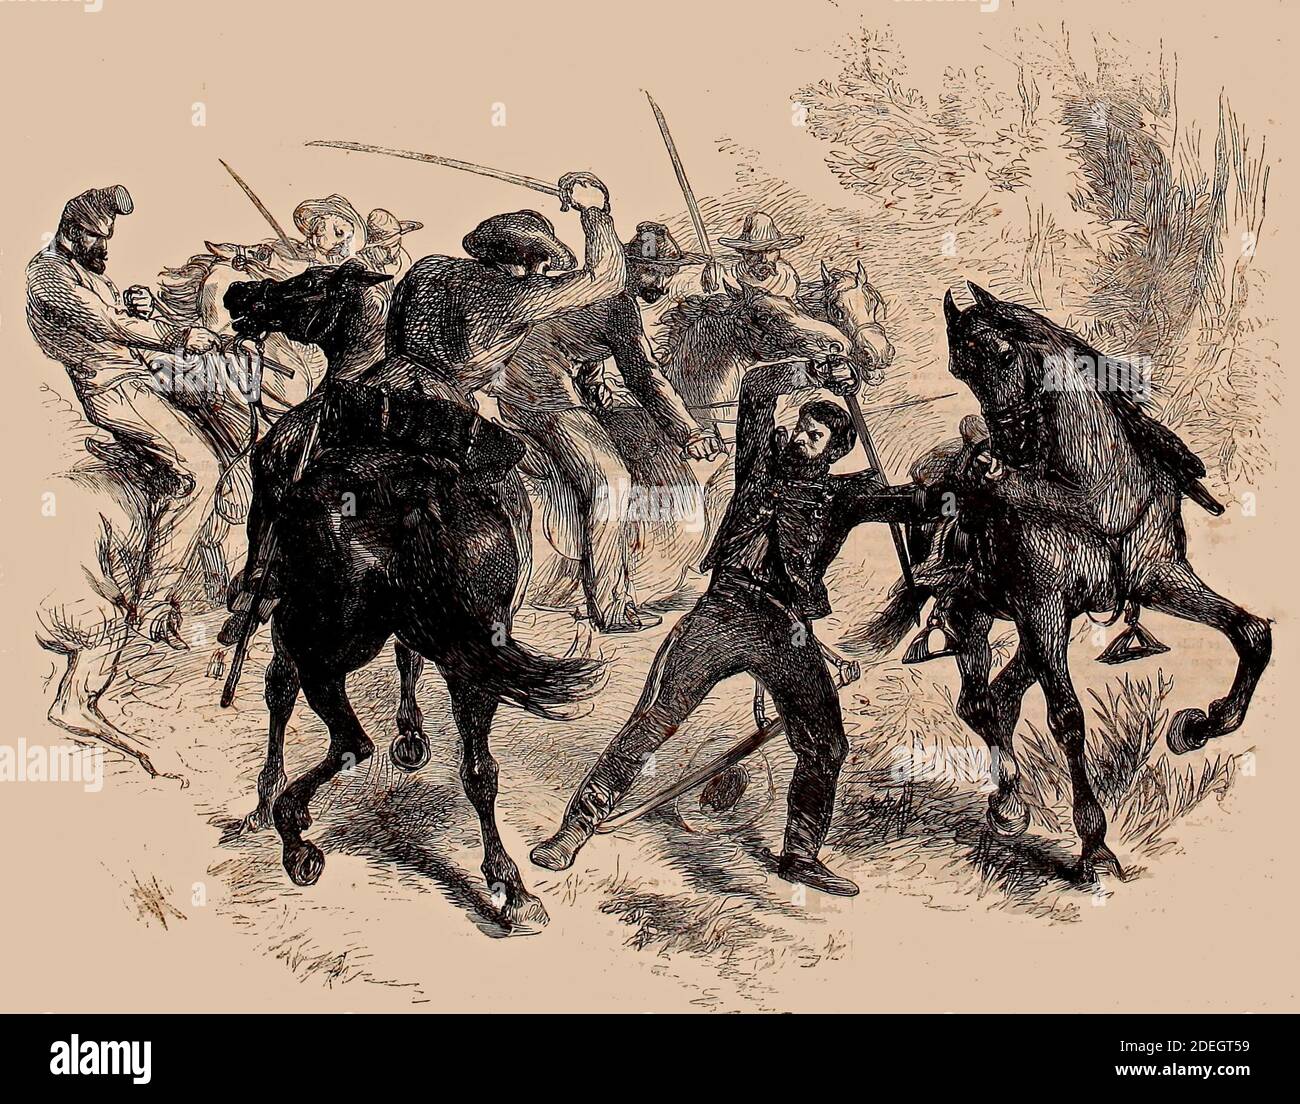 La Guerra Civil en América - captura de un Dragón Federal por Guerilla Horseman de Virginia, 1861 Foto de stock